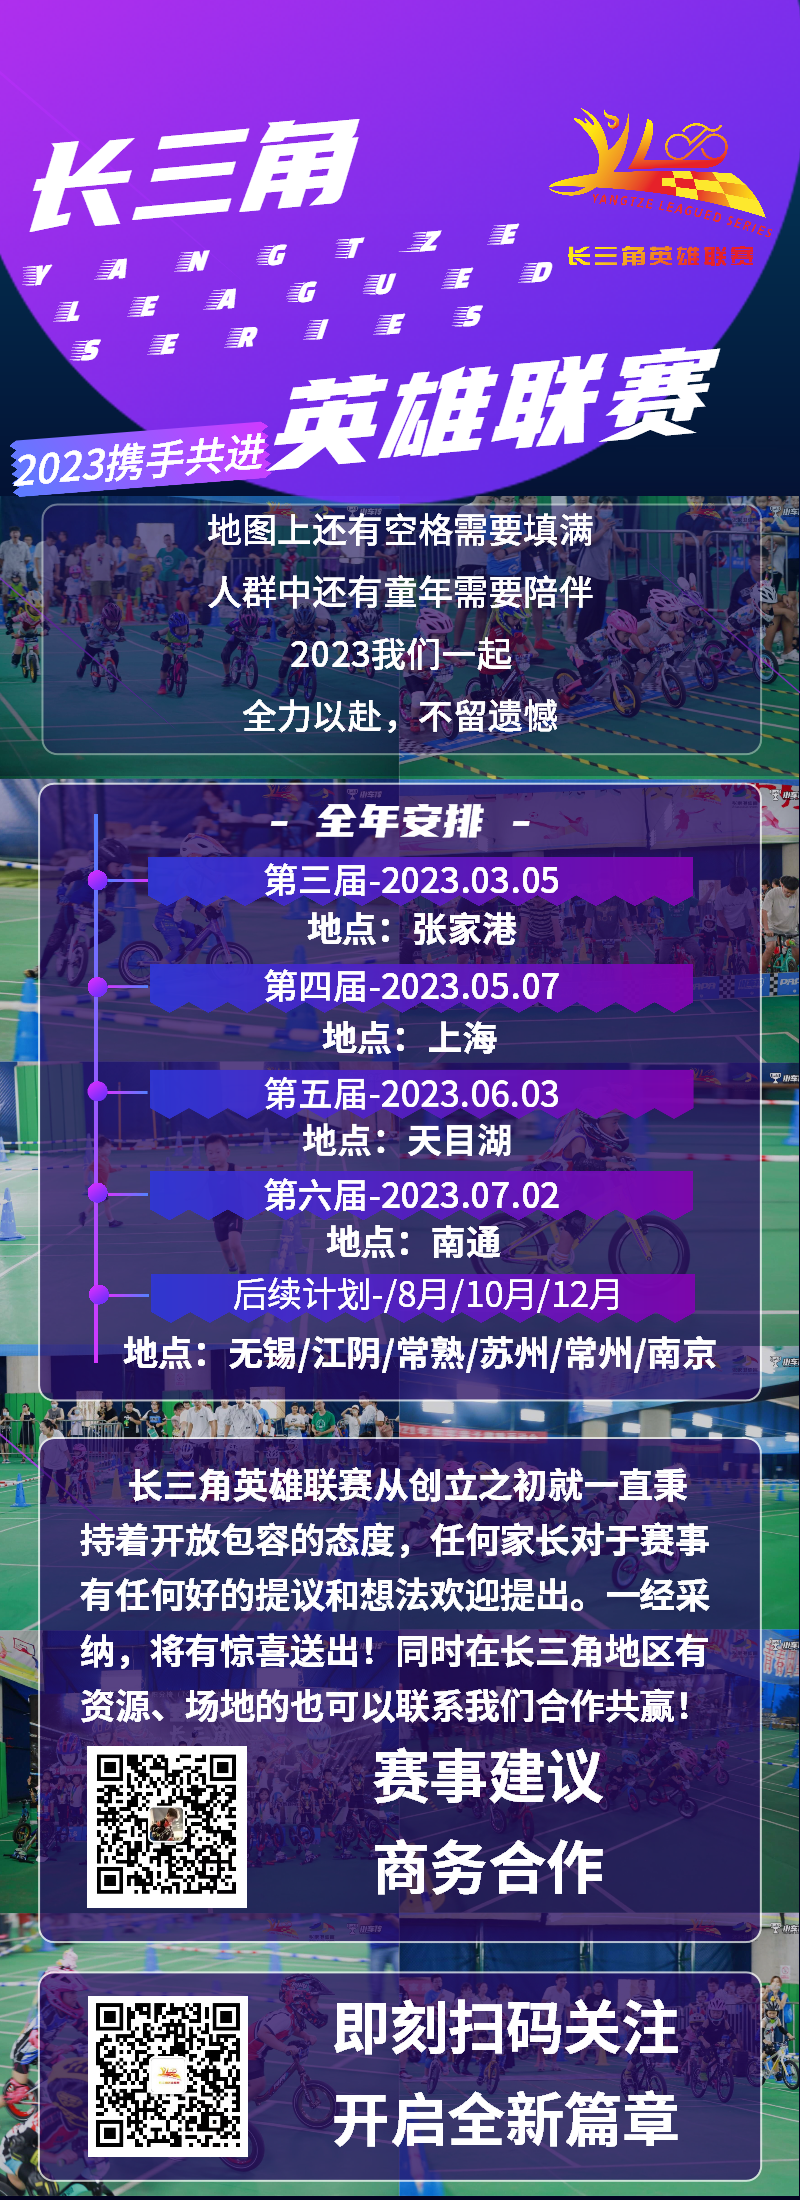 紫色互联网行业交流会.png